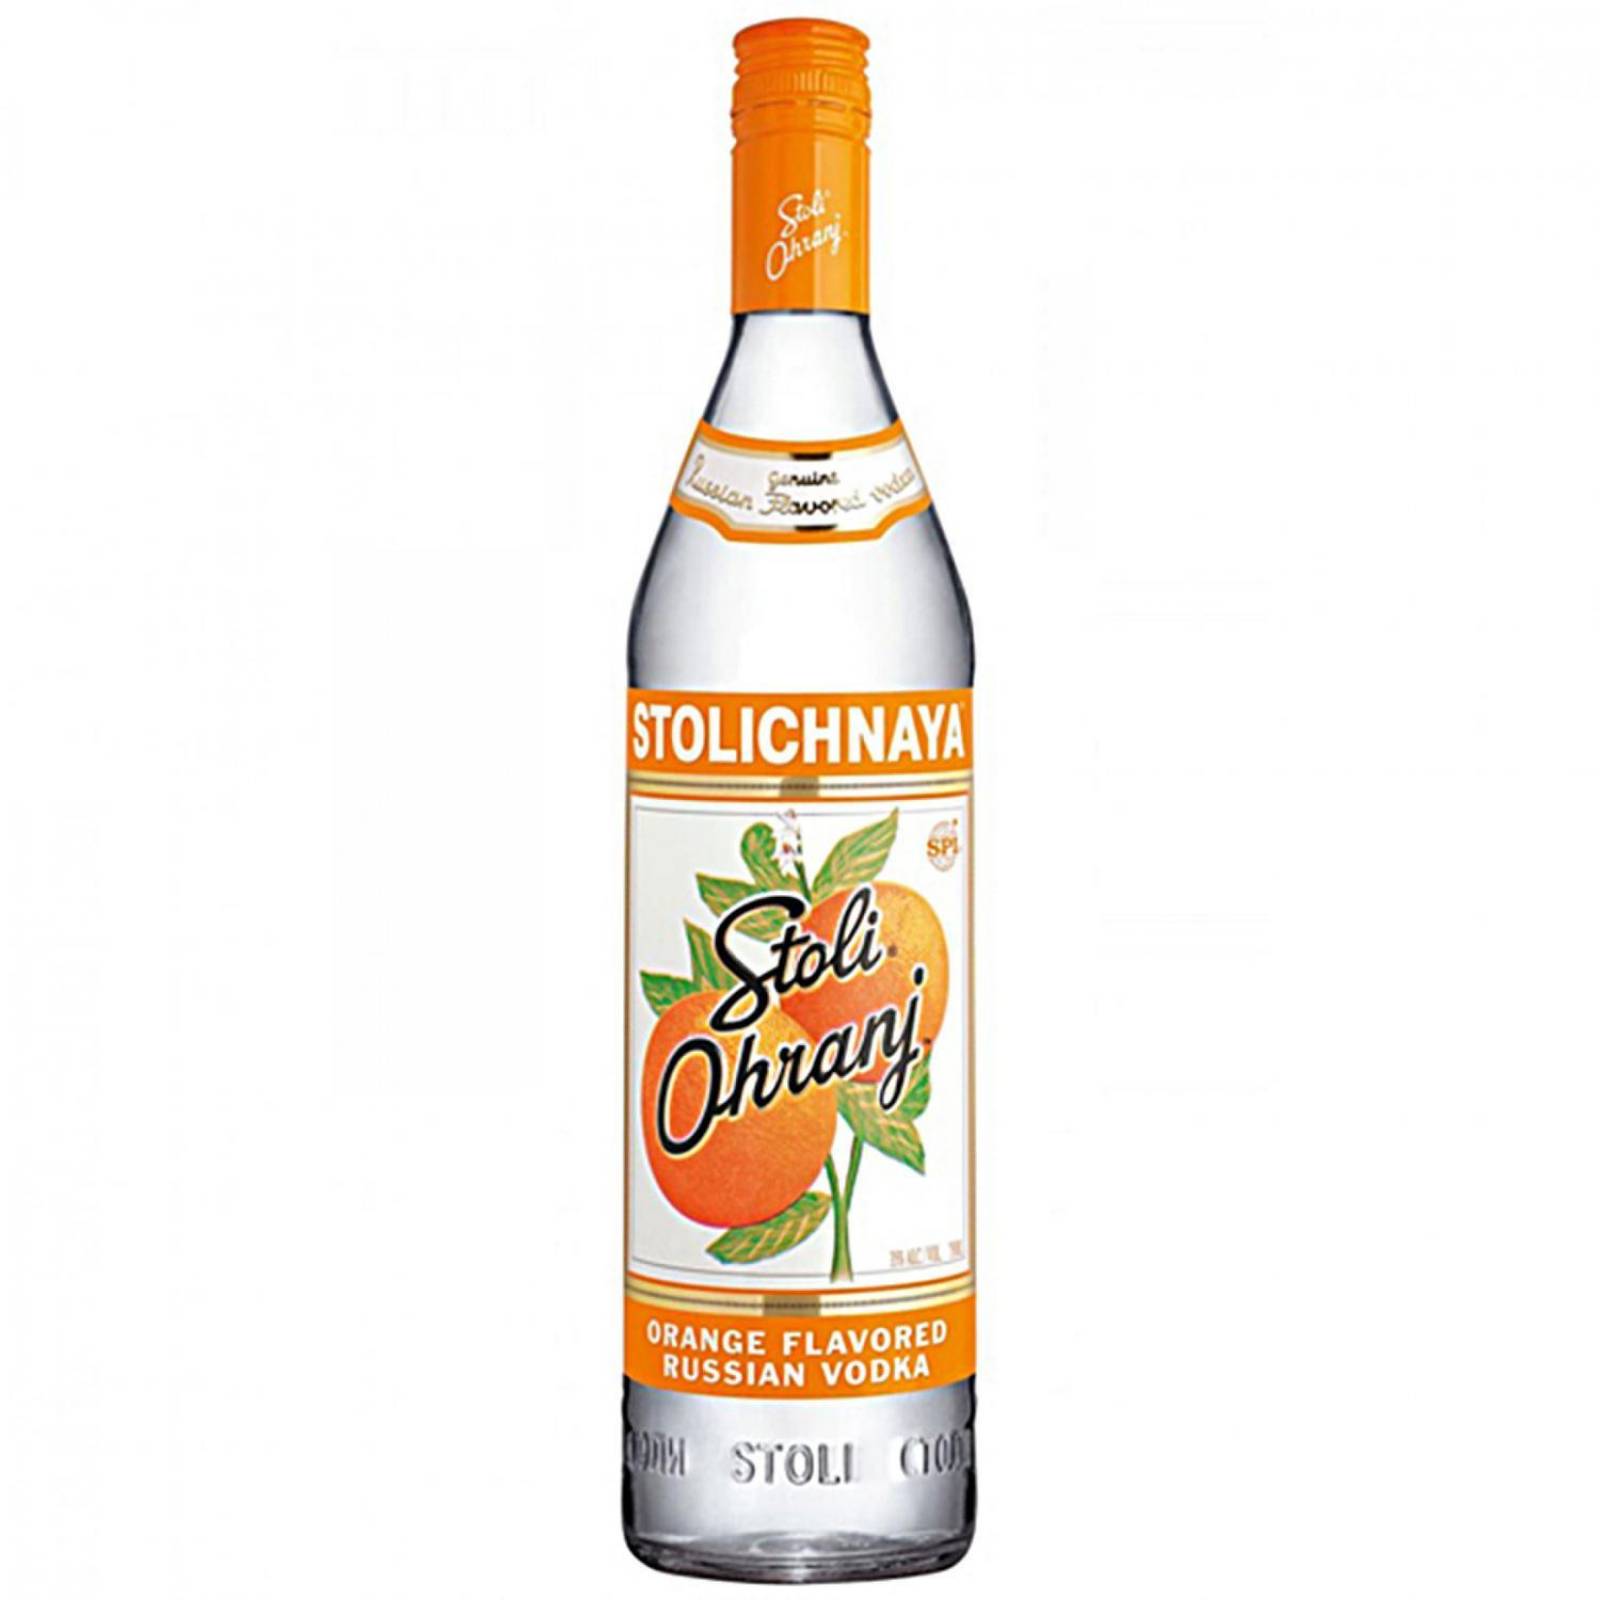 Vodka Stolichnaya Ohranj 750 ml 